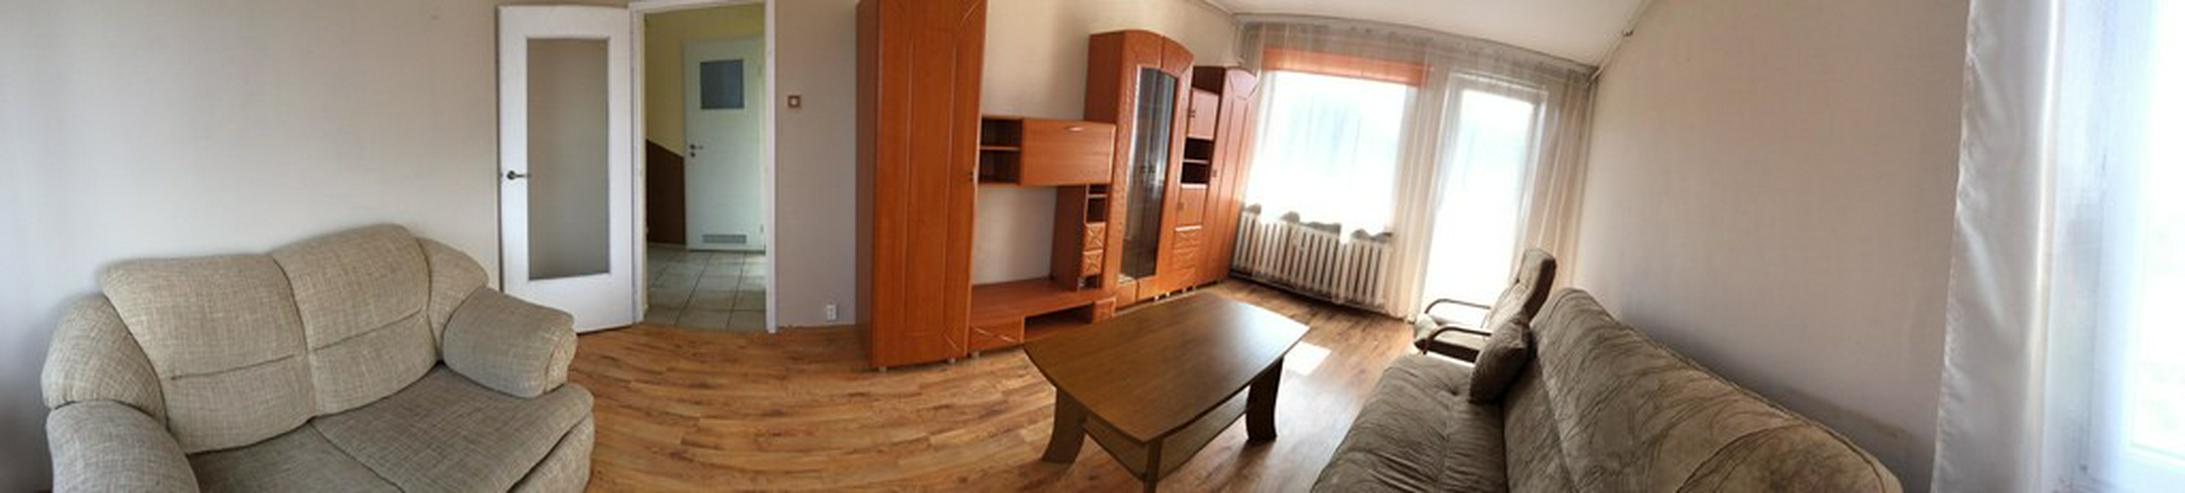 Wohnung in Zielona Gora (Polen) - Wohnung kaufen - Bild 9